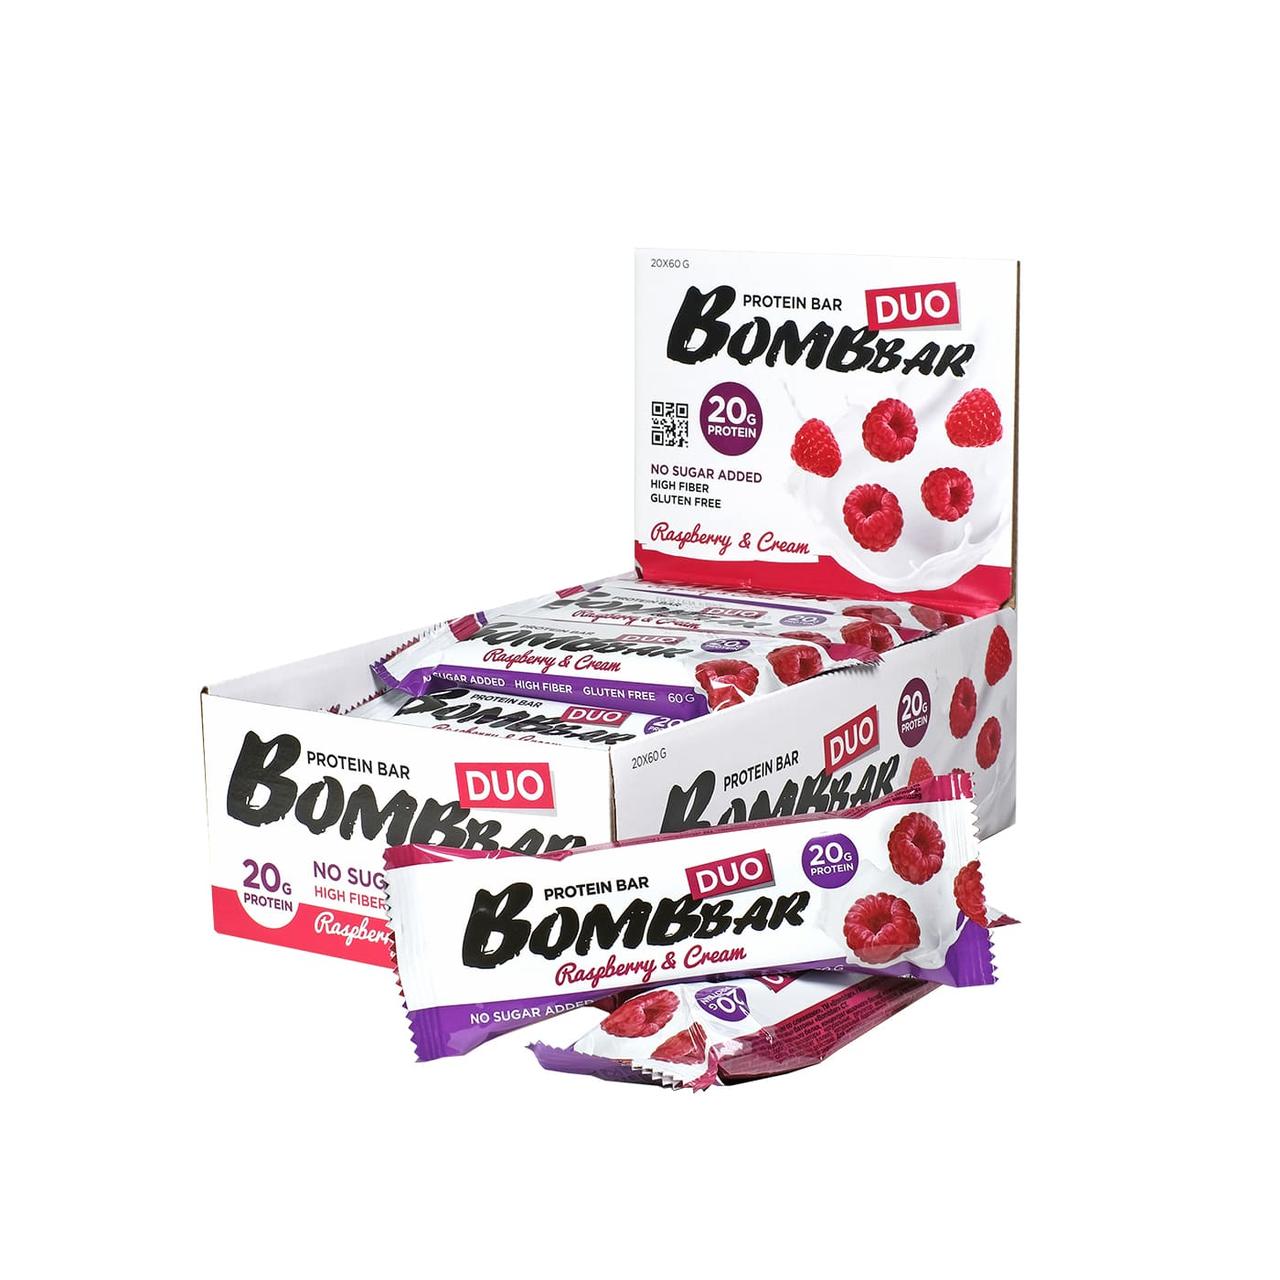 Протеиновые батончики Bombbar – Duo - Малиновый крем со сливками